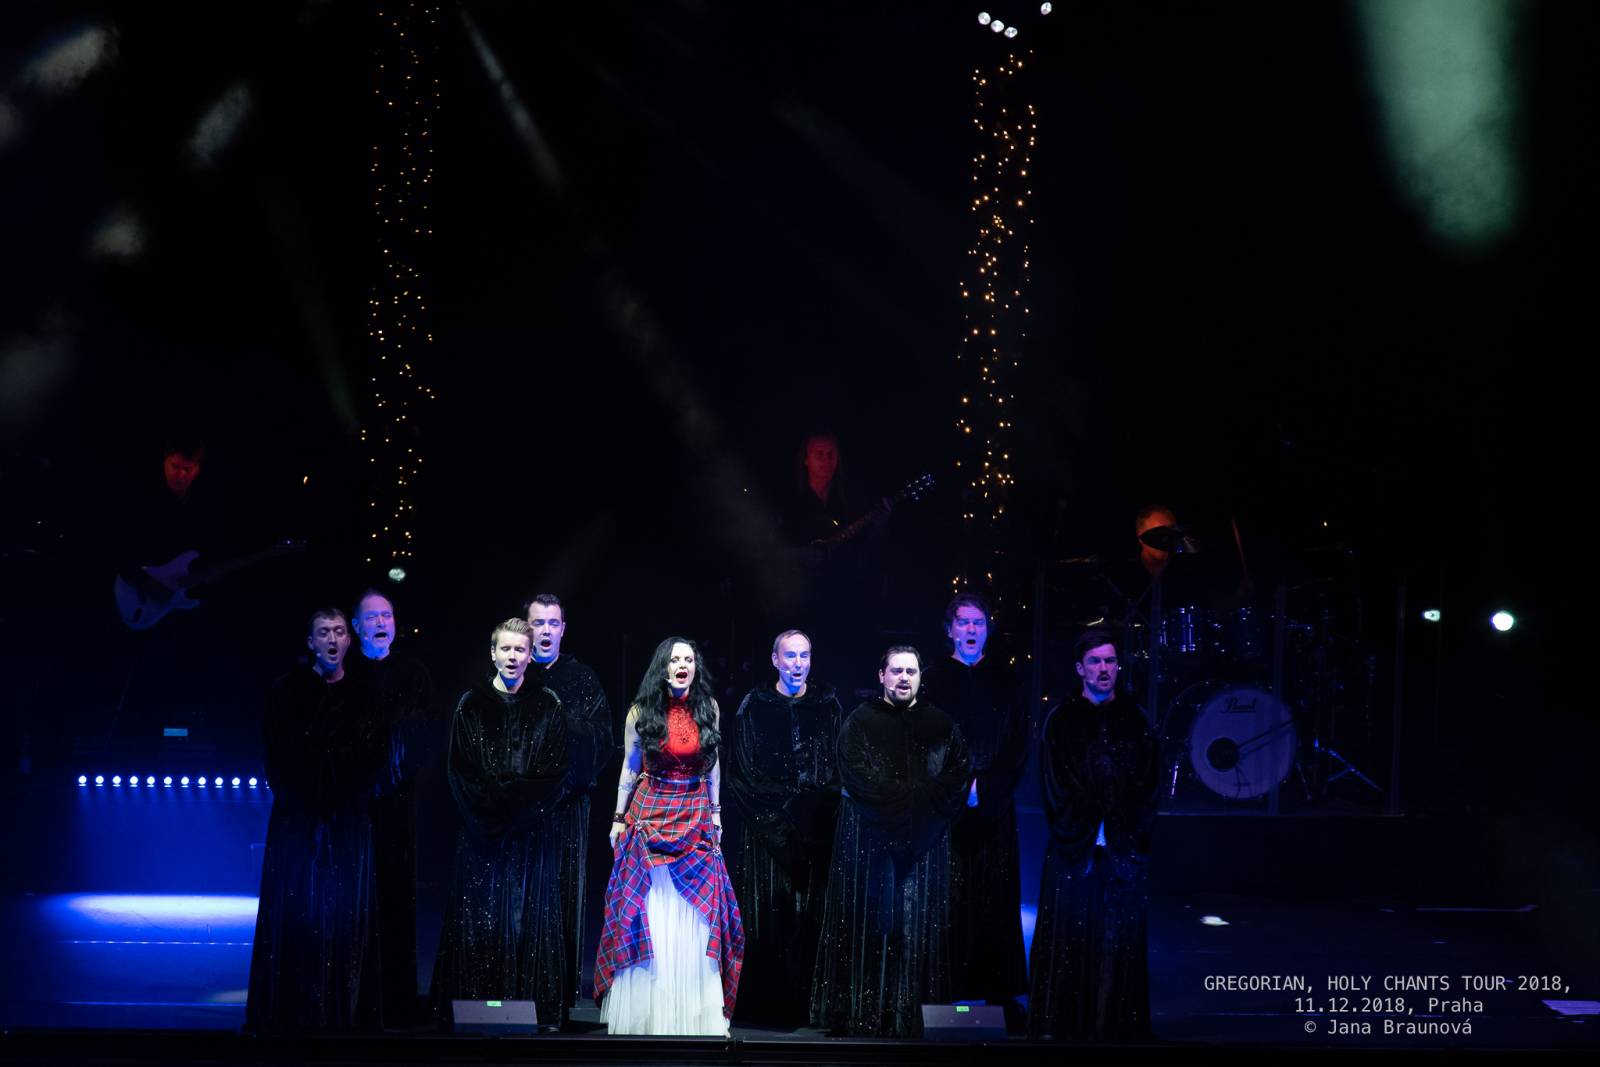 Chorálová skupina Gregorian slaví 20 let novým albem a velkolepou tour